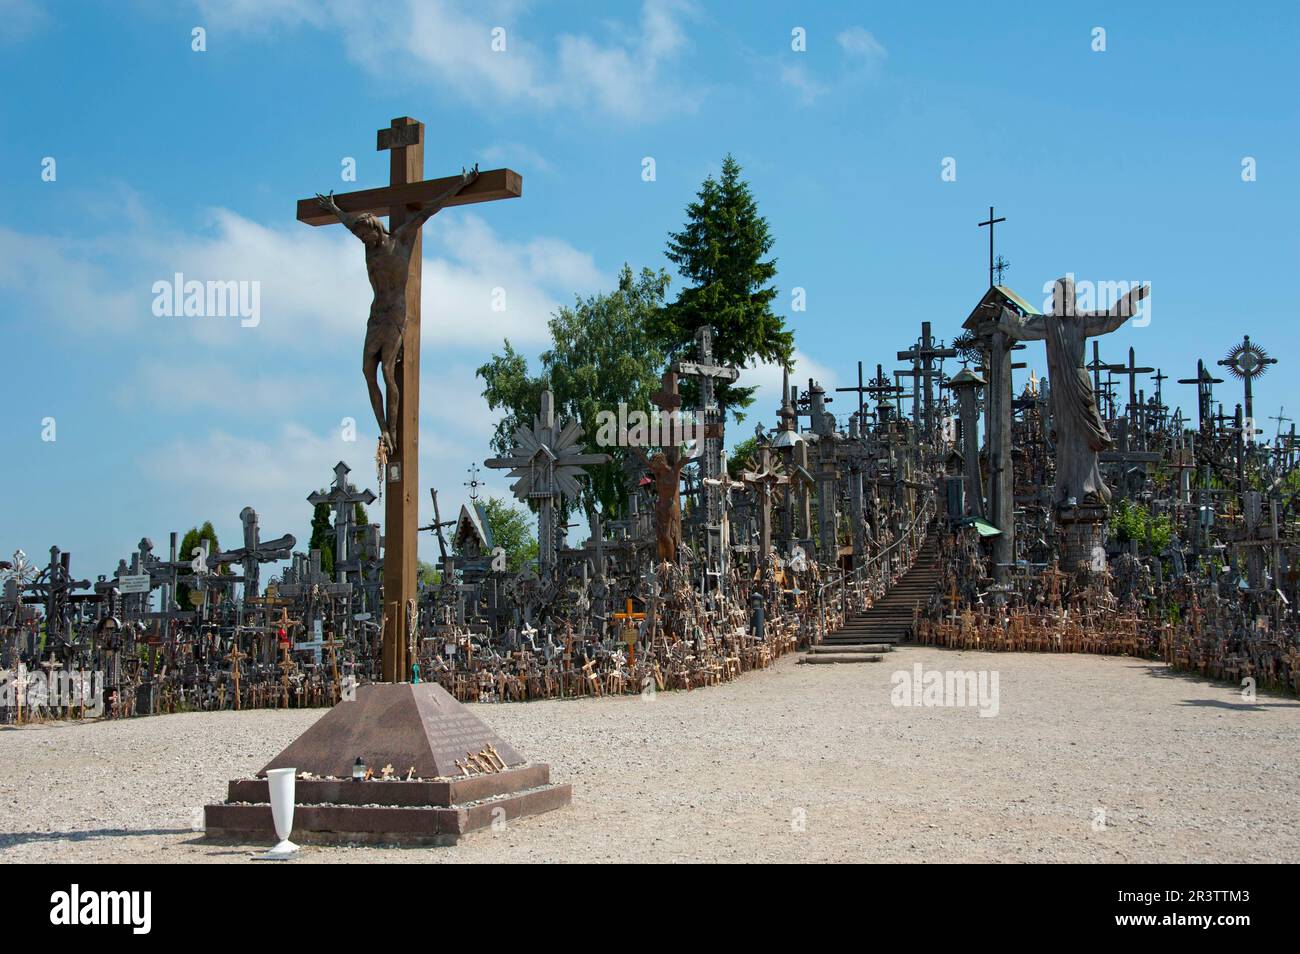 Berg der Kreuze, Litauen, baltische Staaten, Europa, Heiligtum, In der Nähe von Siauliai, Kryziu kalnas Stockfoto